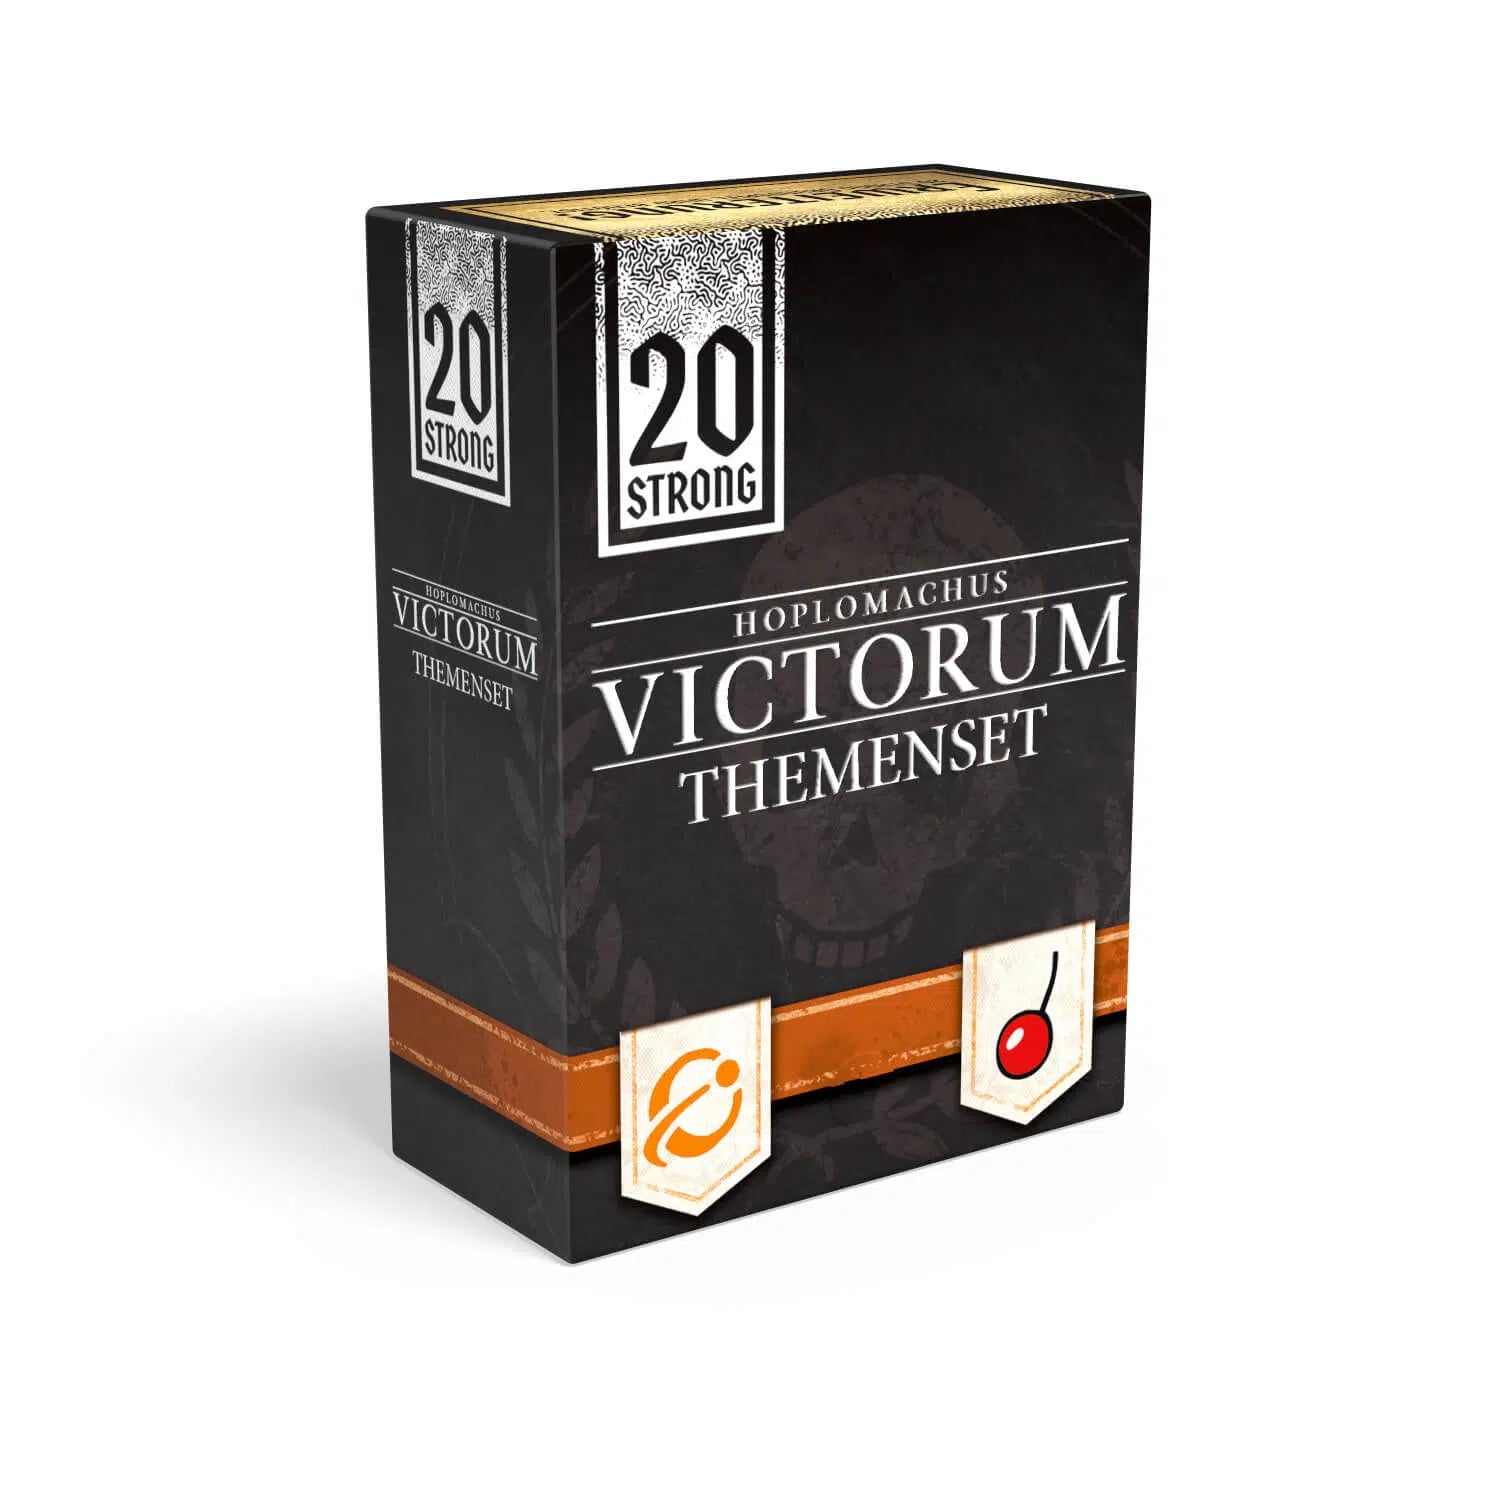 20 Strong - Themenset Hoplomachus Victorum Erweiterung